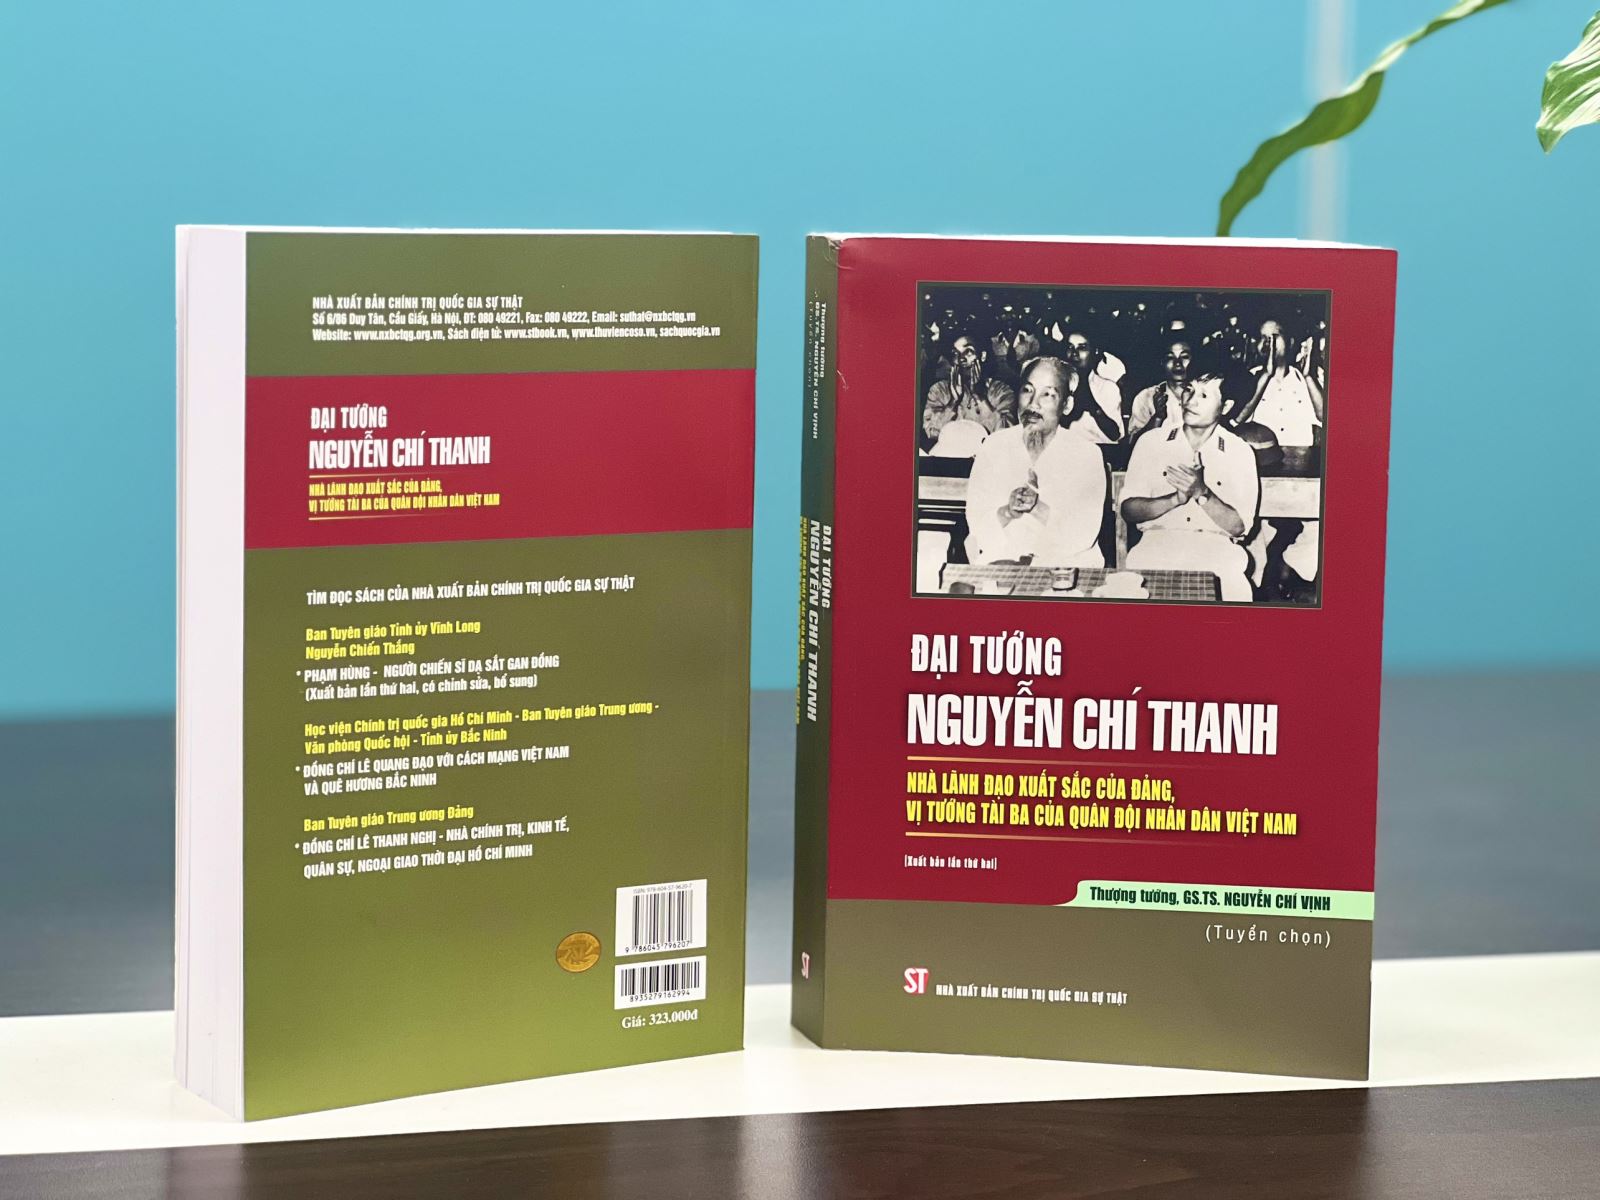 Tái bản cuốn sách “Đại tướng Nguyễn Chí Thanh - Nhà lãnh đạo xuất sắc của Đảng, vị tướng tài ba của Quân đội nhân dân Việt Nam”